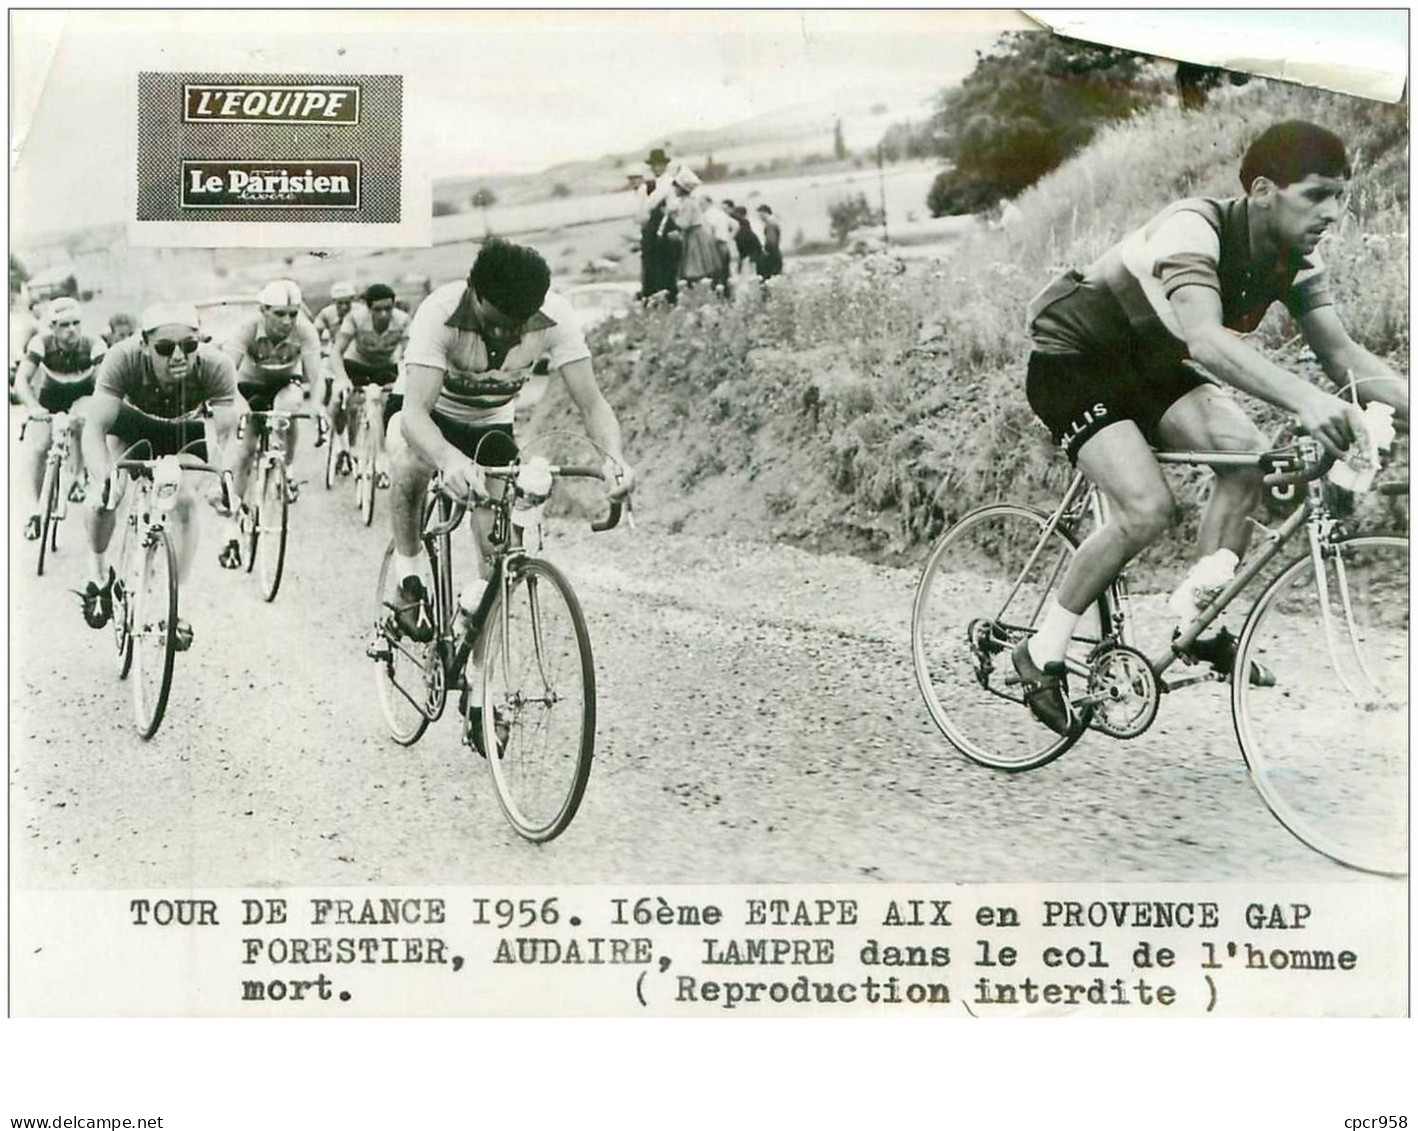 PHOTO DE PRESSE ORIGINALE TOUR DE FRANCE 1956.20X15.16eme ETAPE AIX EN PROVENCE GAP.FORESTIER,AUDAIRE,LAMPRE DAN.n°18695 - Ciclismo